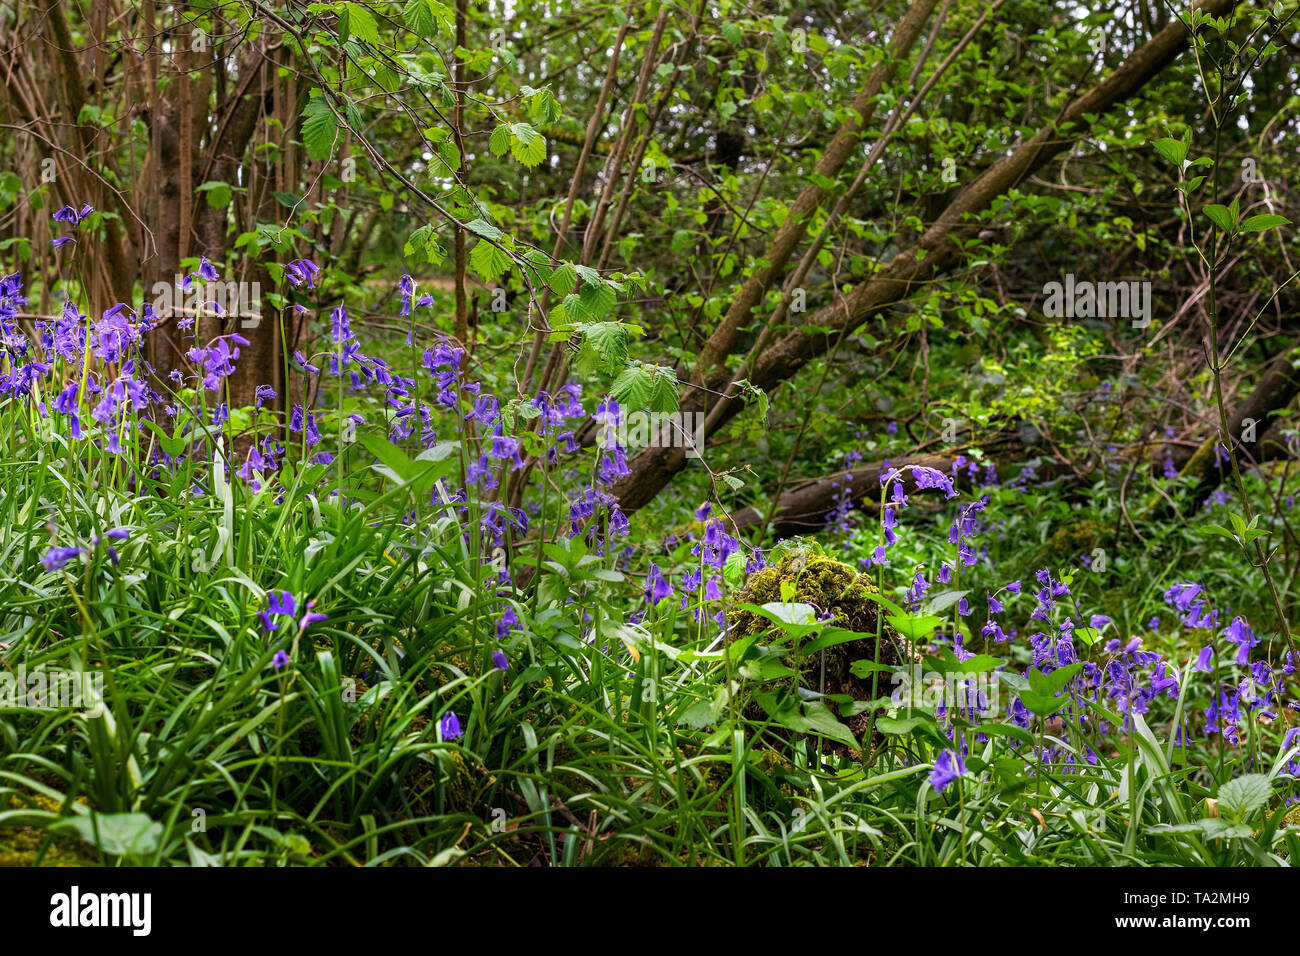 Bluebells de plus en plus en awood Oxfordshire, Angleterre, Royaume-Uni Banque D'Images